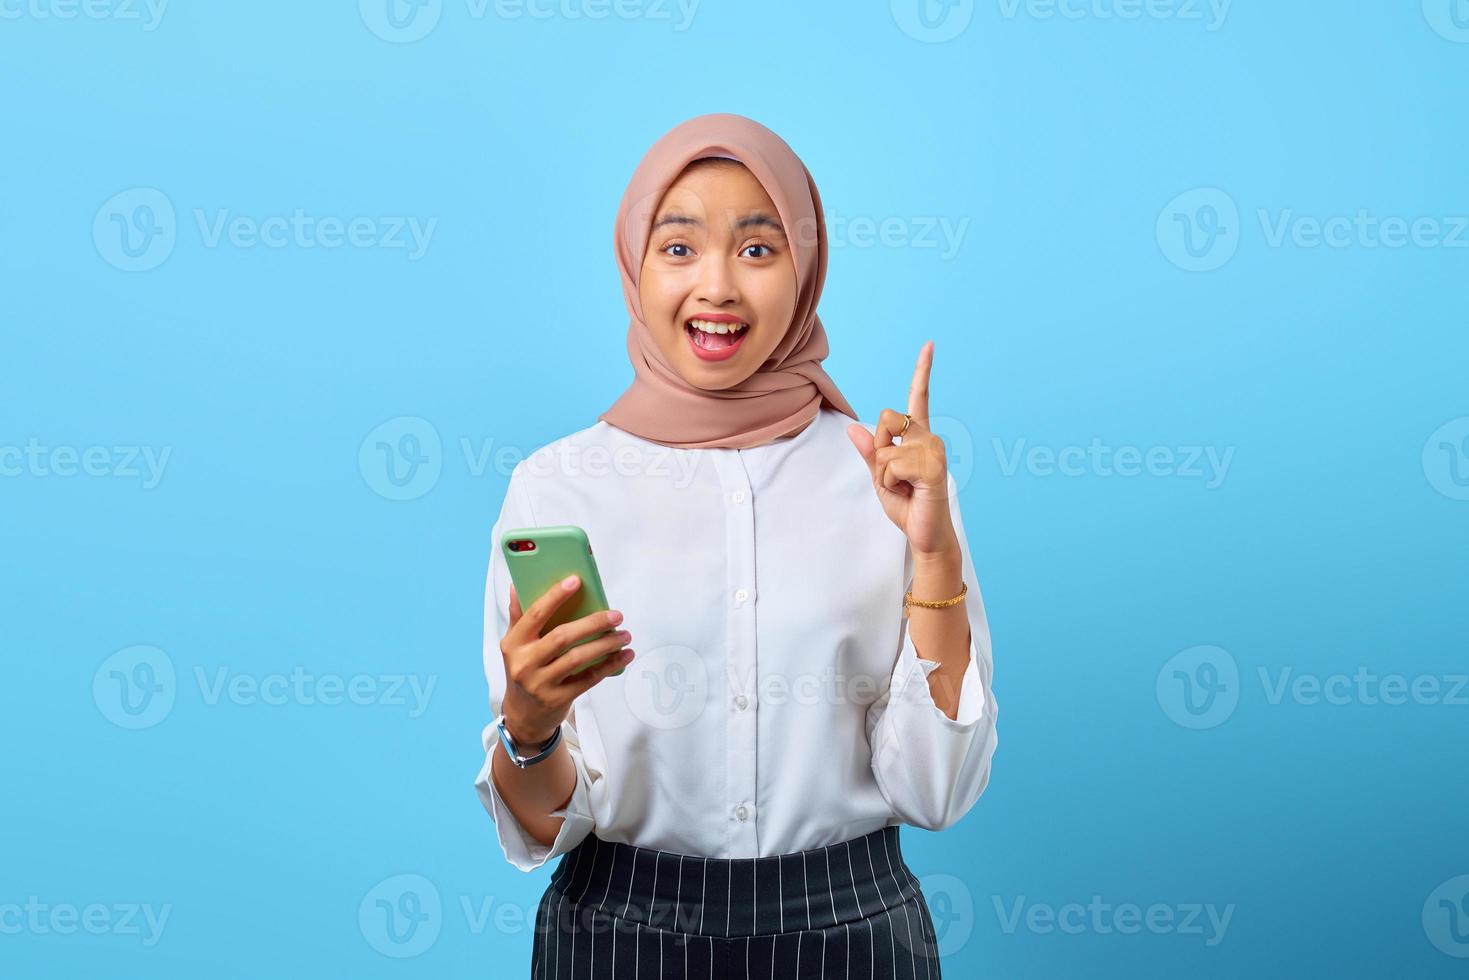 portrait d'une jeune femme asiatique excitée tenant un téléphone portable et un doigt levé parce qu'il y a des solutions photo